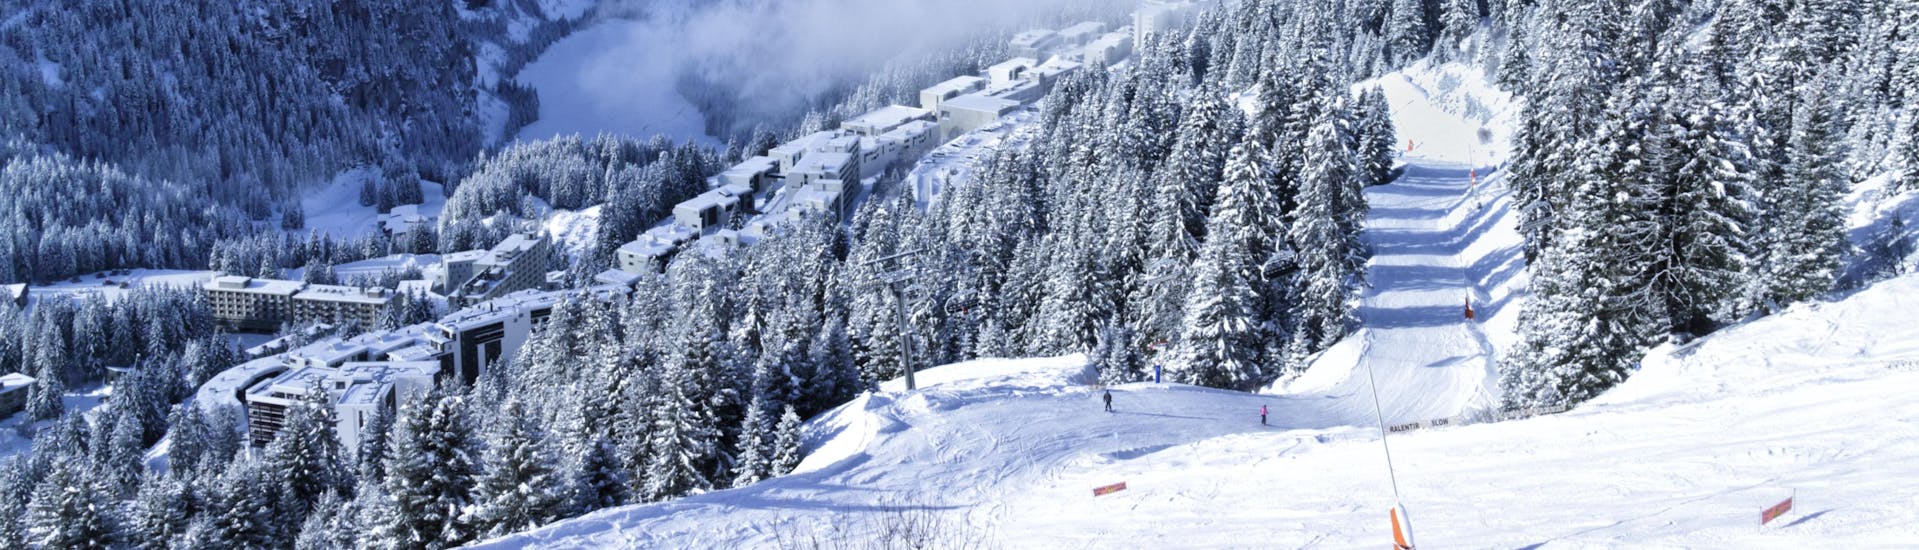 Une photo du paysage hivernal blanc observé dans le domaine skiable du Grand Massif où les écoles de ski locales emmènent leurs élèves pour leurs cours de ski.